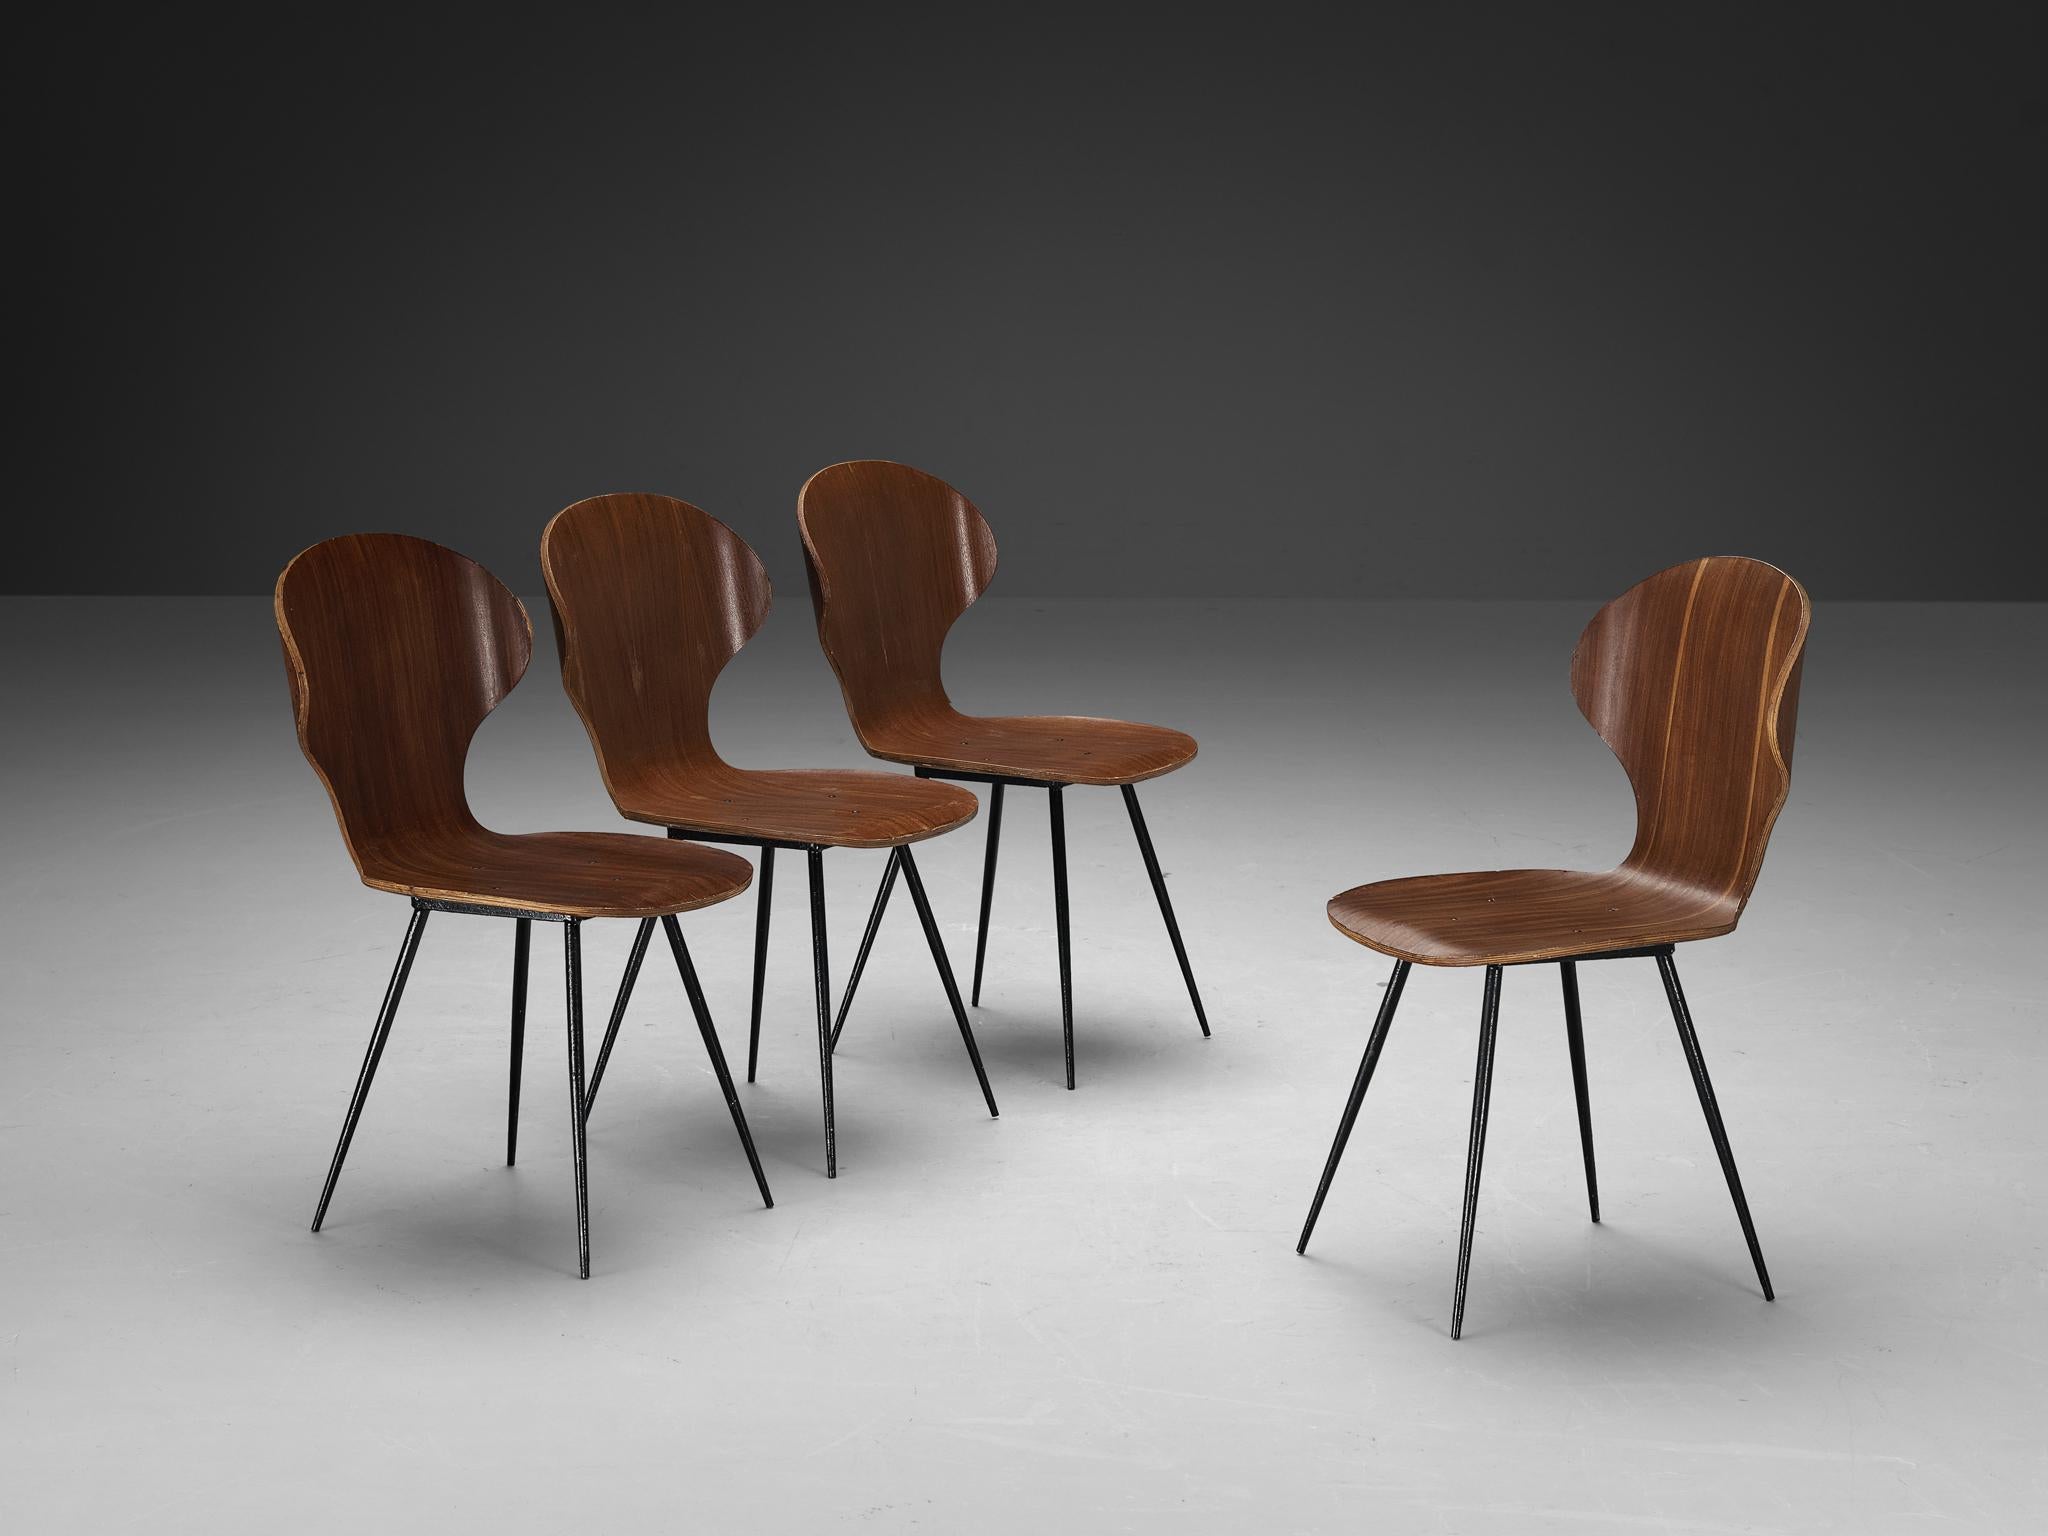 Carlo Ratti für Industria Legni Curvati, Satz von vier Esszimmerstühlen, Sperrholz mit Teakholzauflage und Metall, Italien, 1970er Jahre.

Elegantes Set italienischer Esszimmerstühle mit Metallgestell und Sperrholzsitzen. Der Sitz verfügt über eine